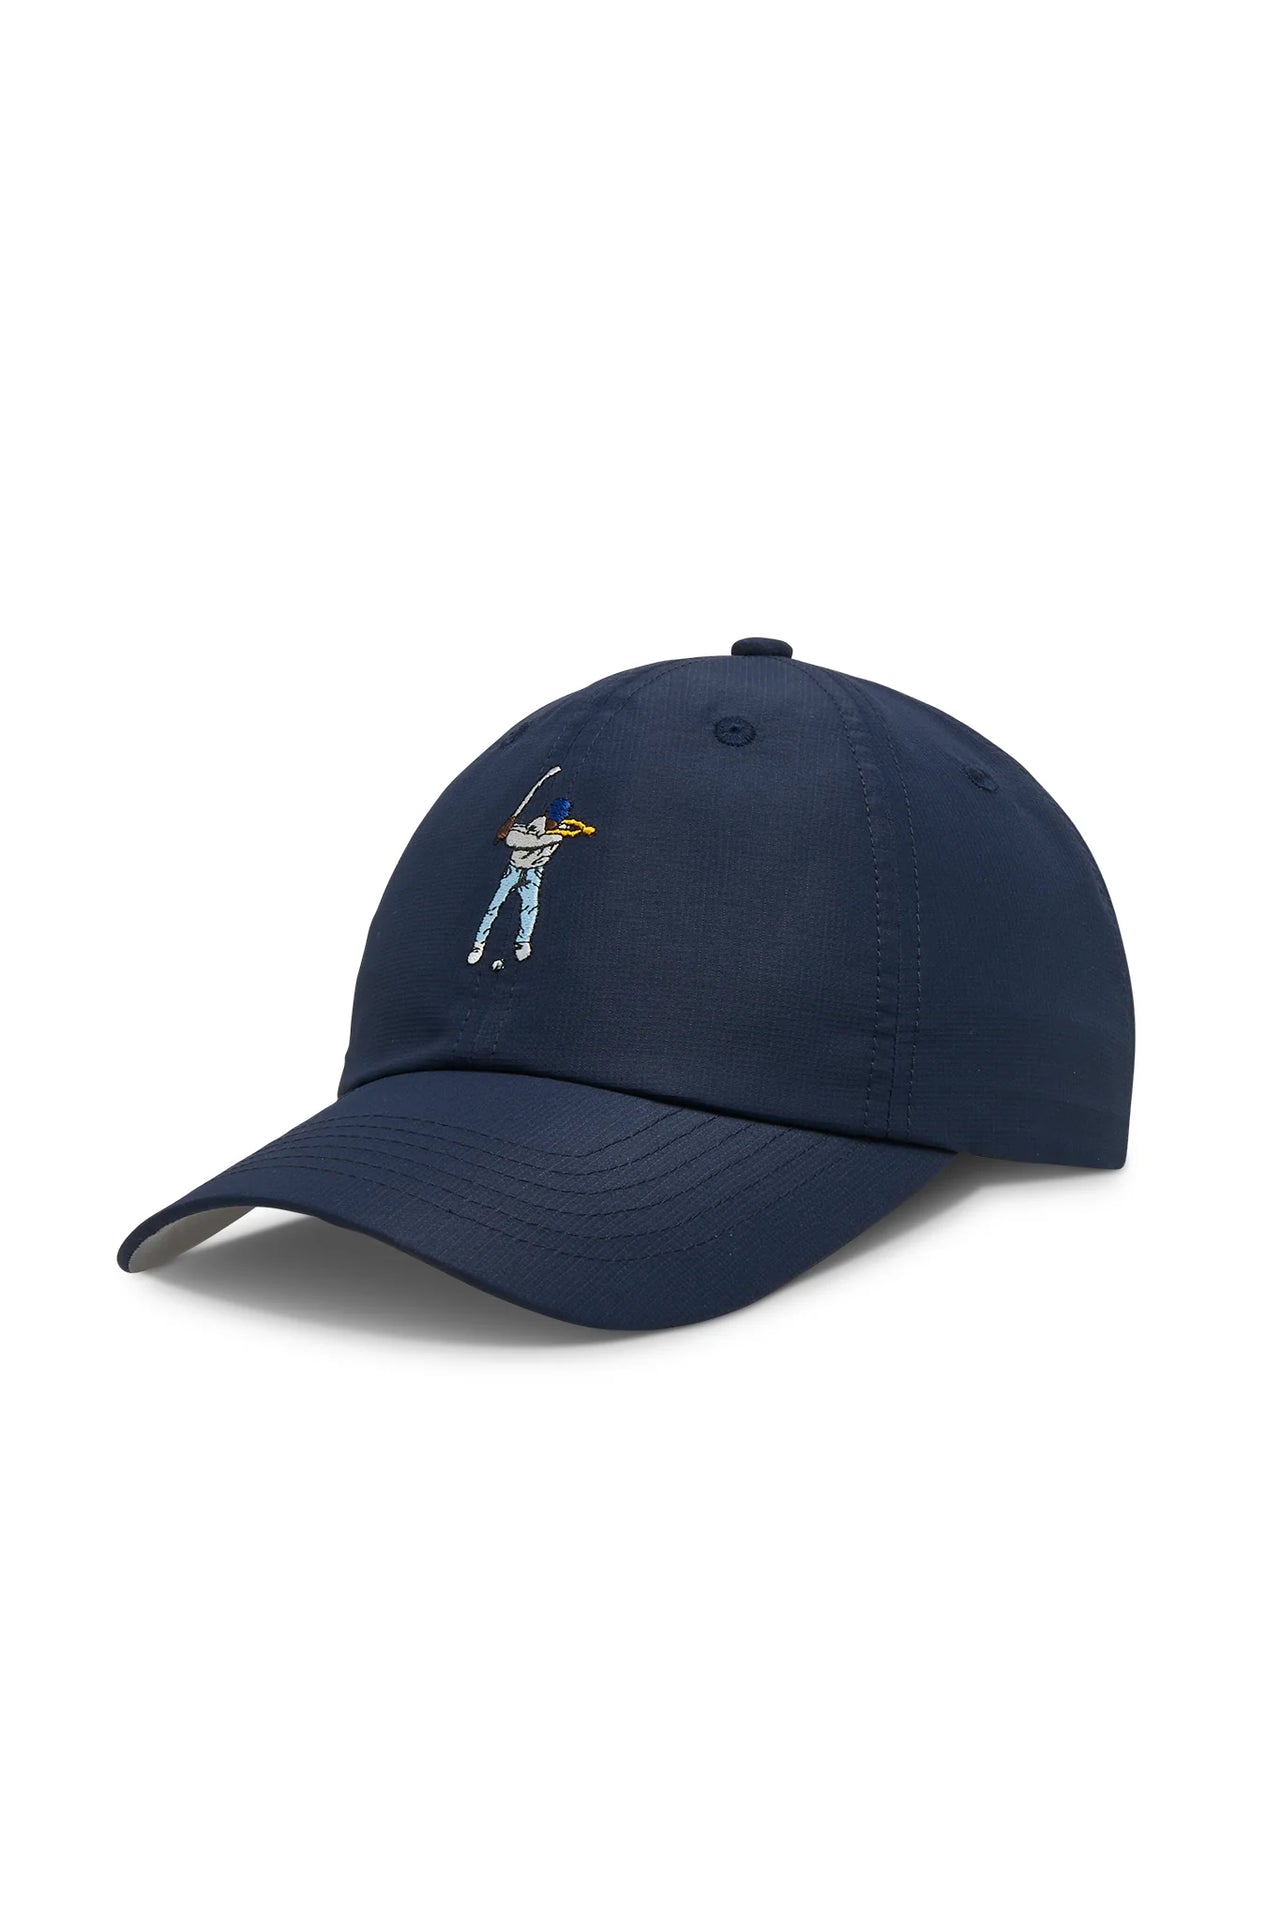 Eastside Golf Tournament Hat - Navy